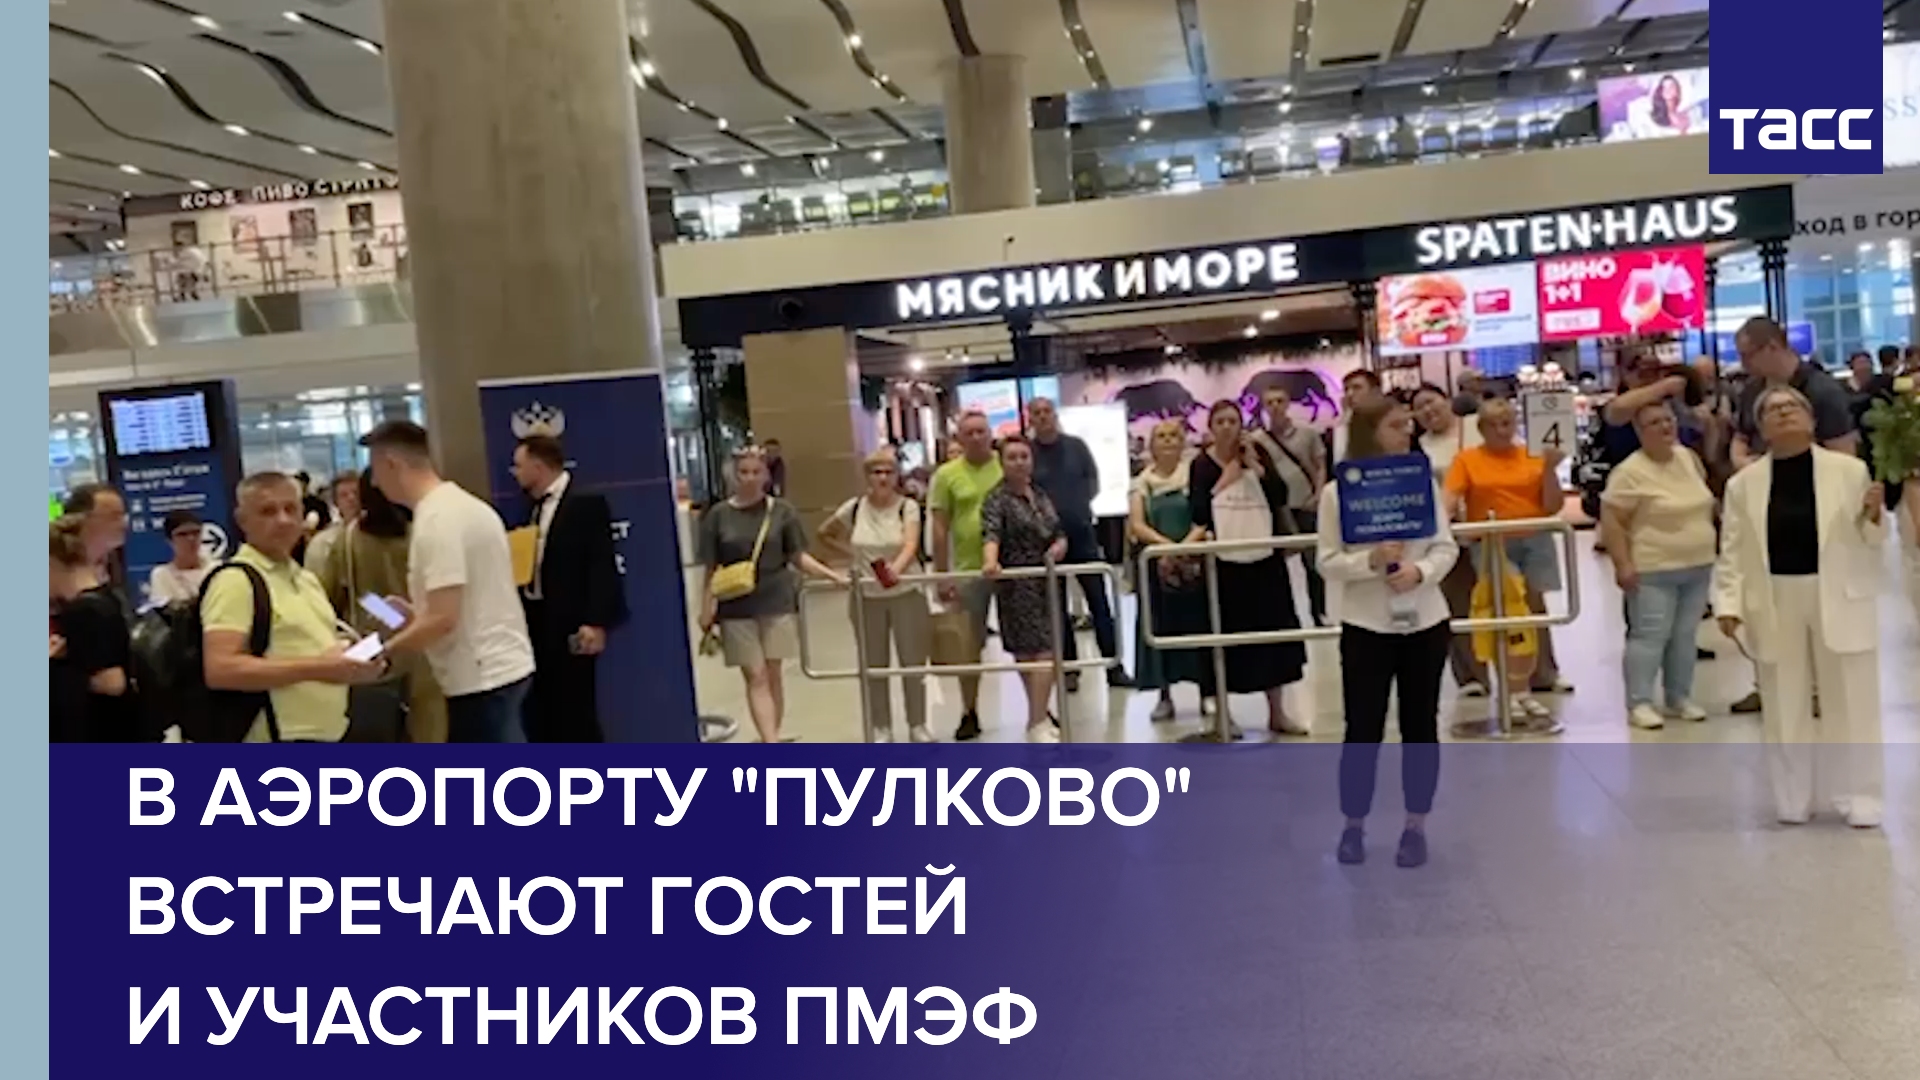 В аэропорту "Пулково" встречают гостей и участников ПМЭФ